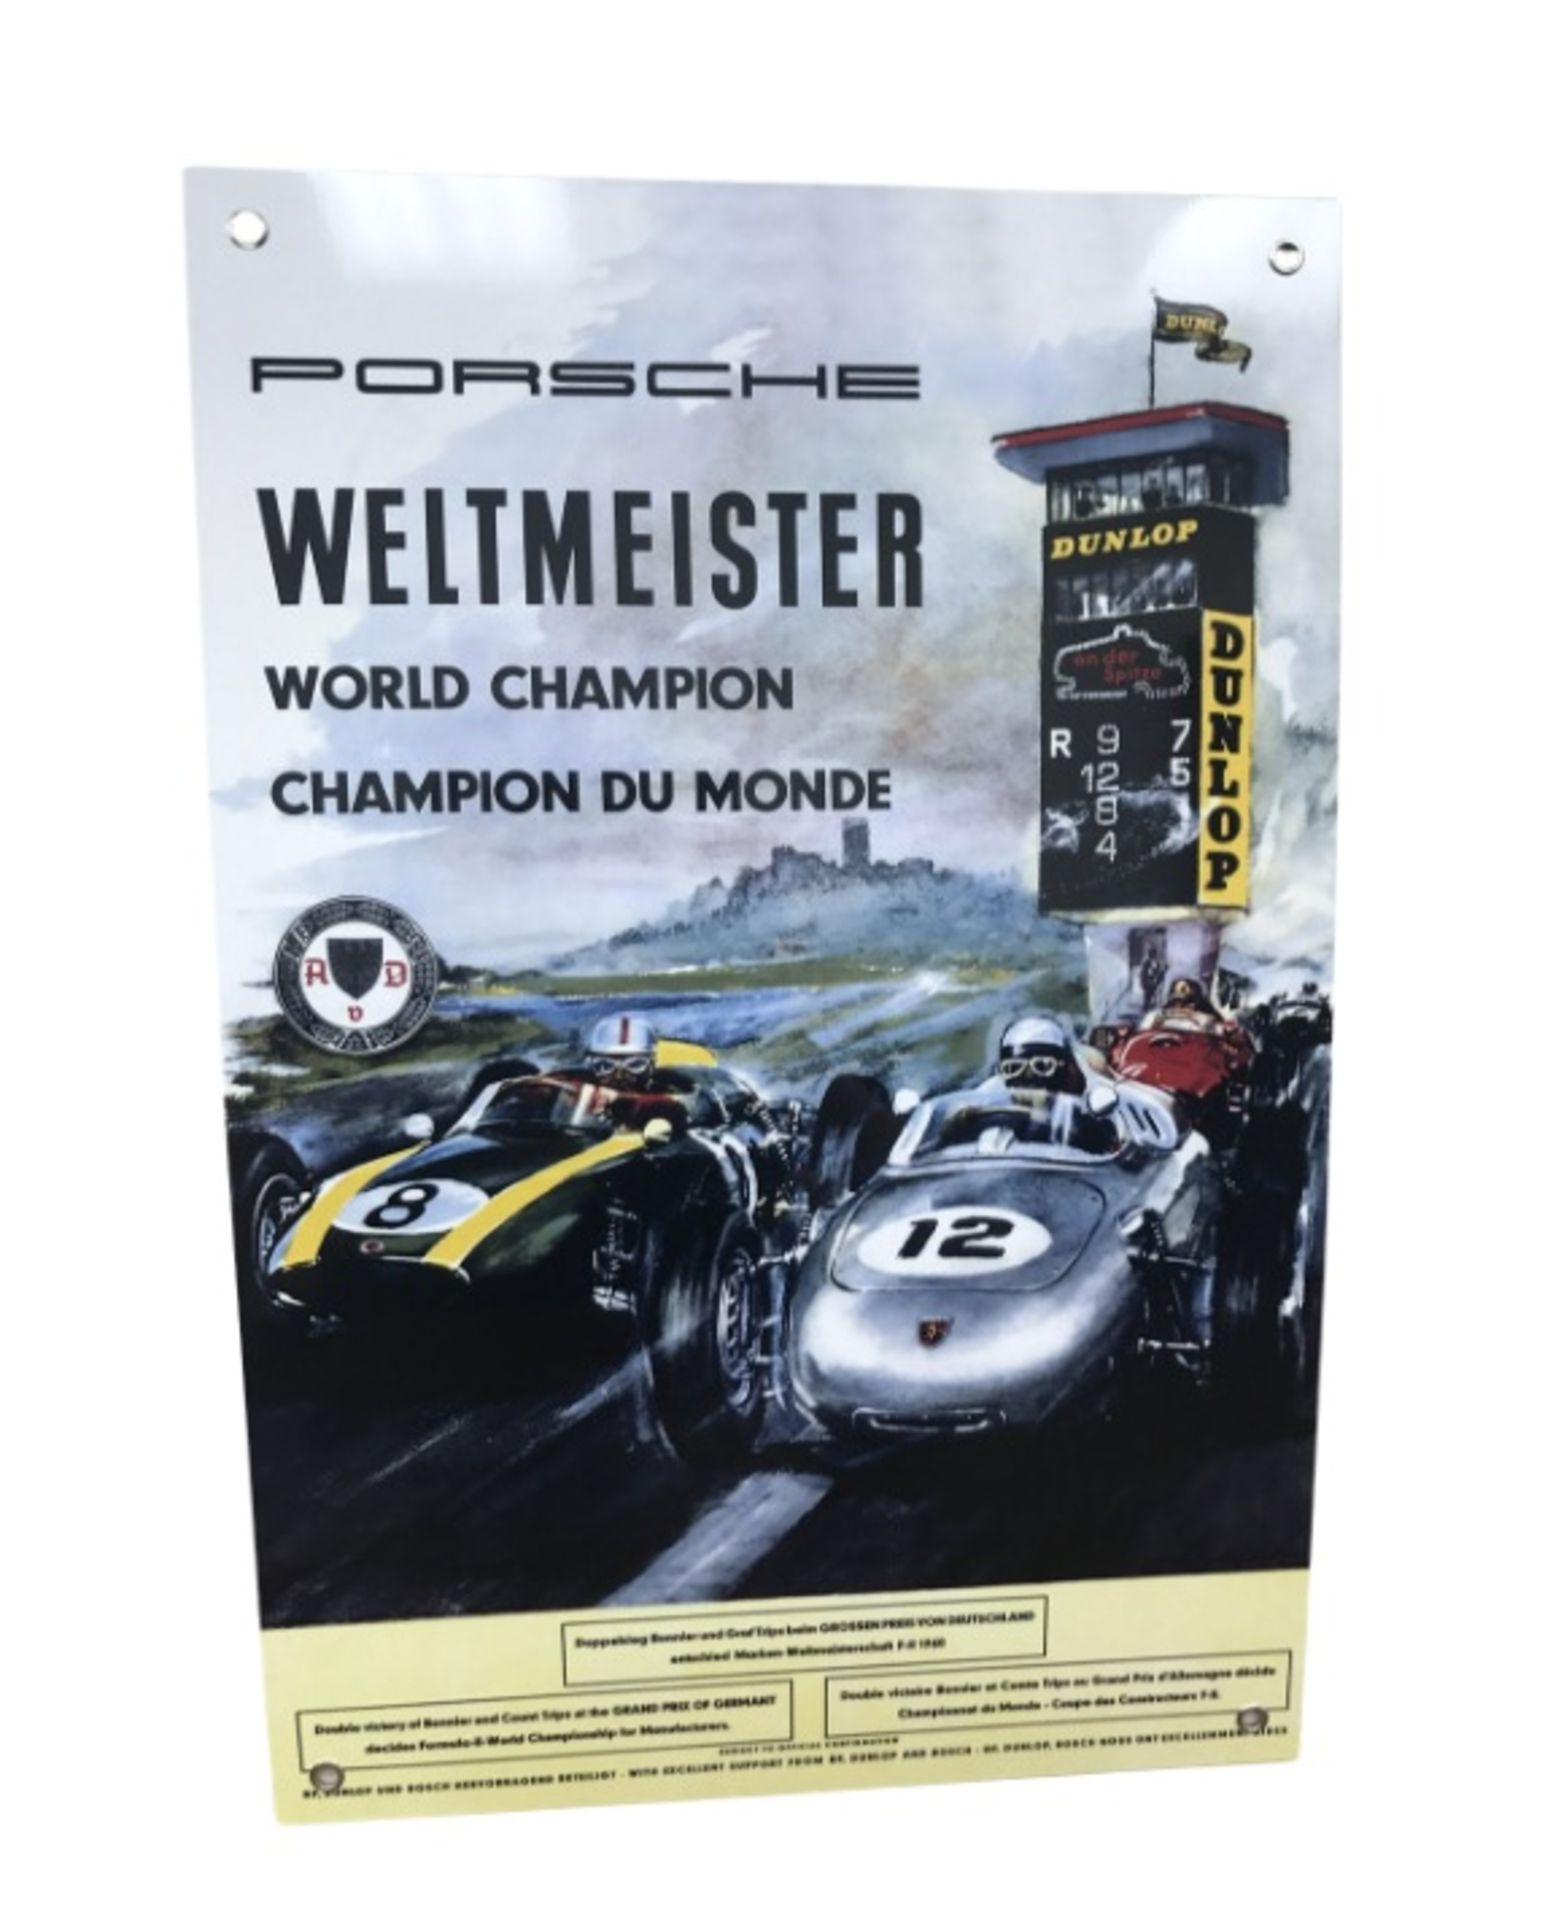 Porsche Weltmesiter "World Champion" Aluminum Garage Wall Display